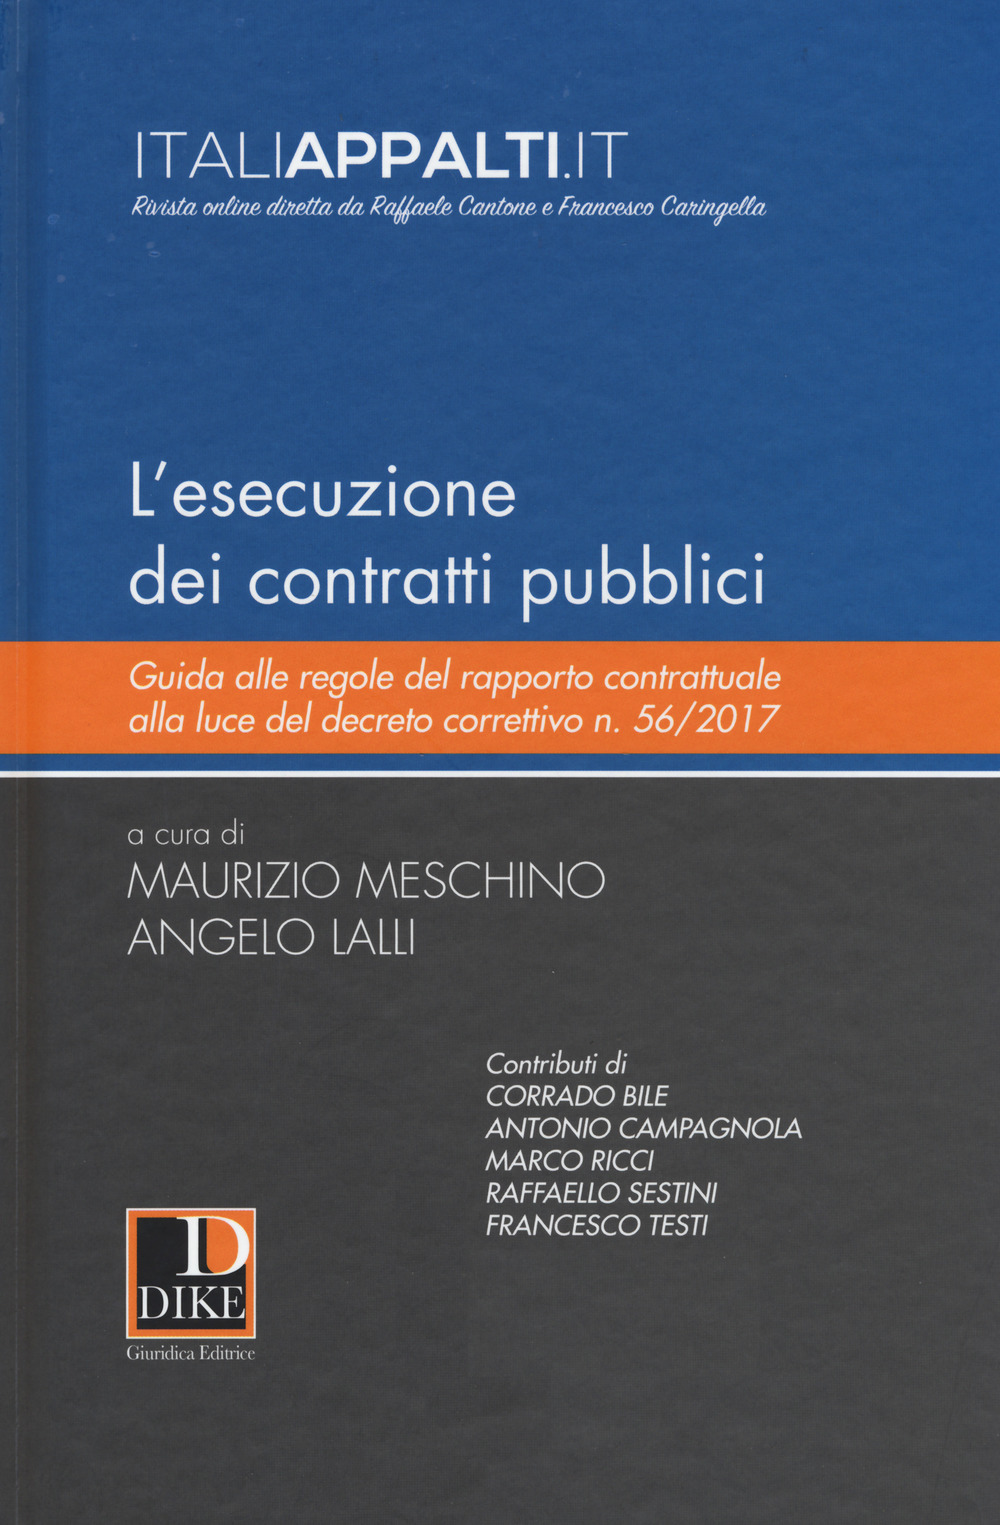 L'esecuzione dei contratti pubblici. Guida alle regole del rapporto contrattuale alla luce del decreto correttivo n. 56/2017